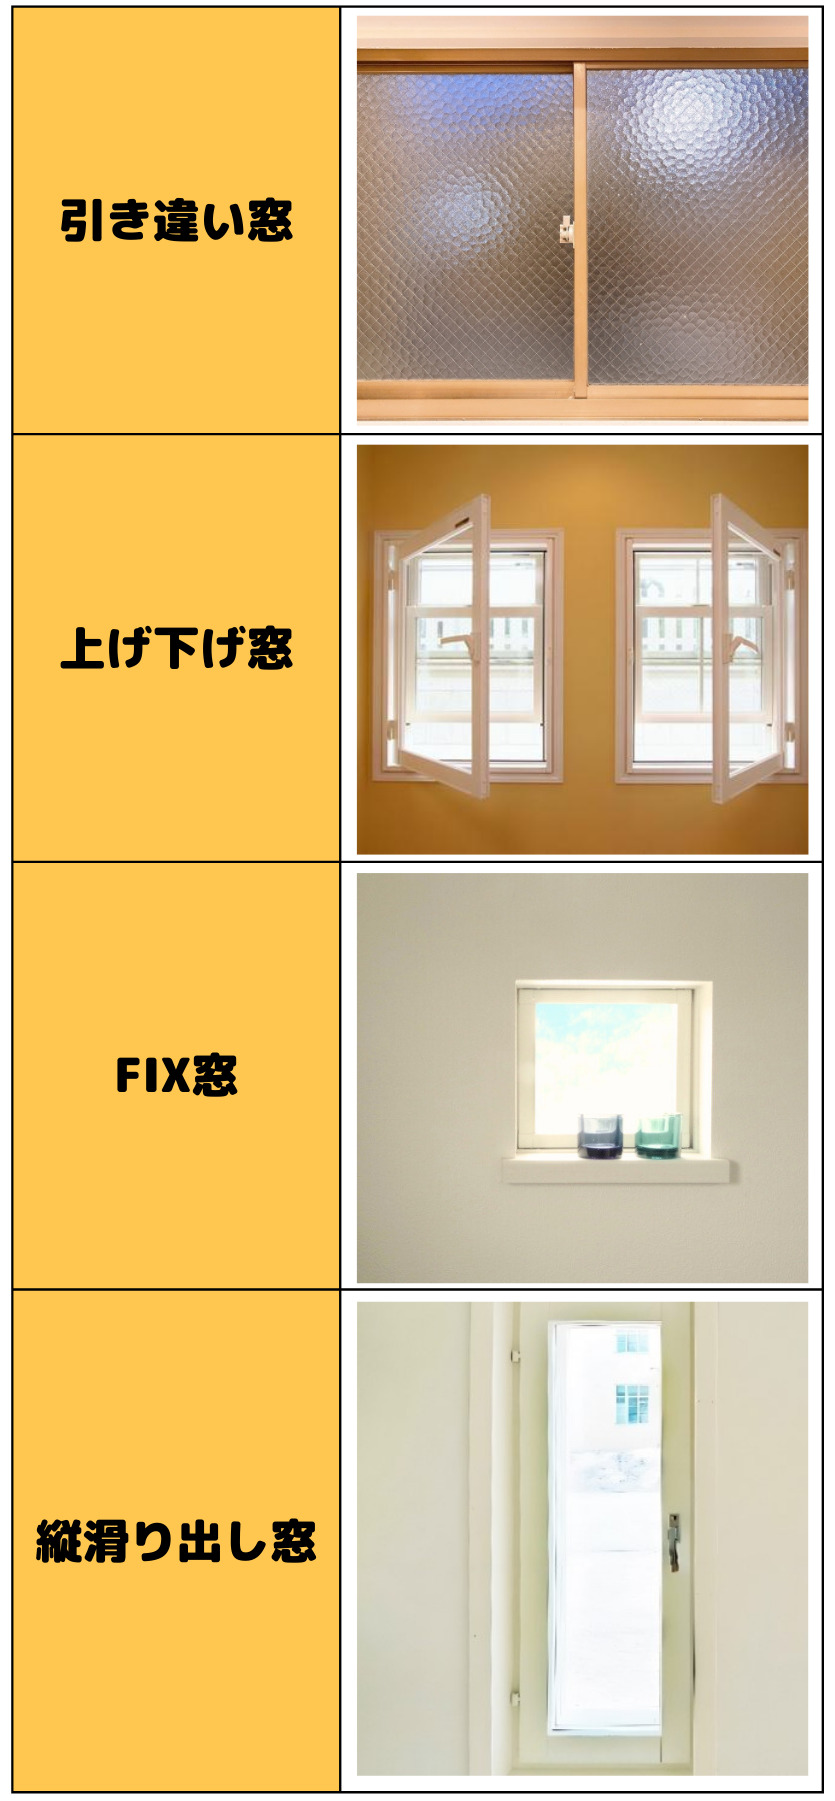 窓の種類